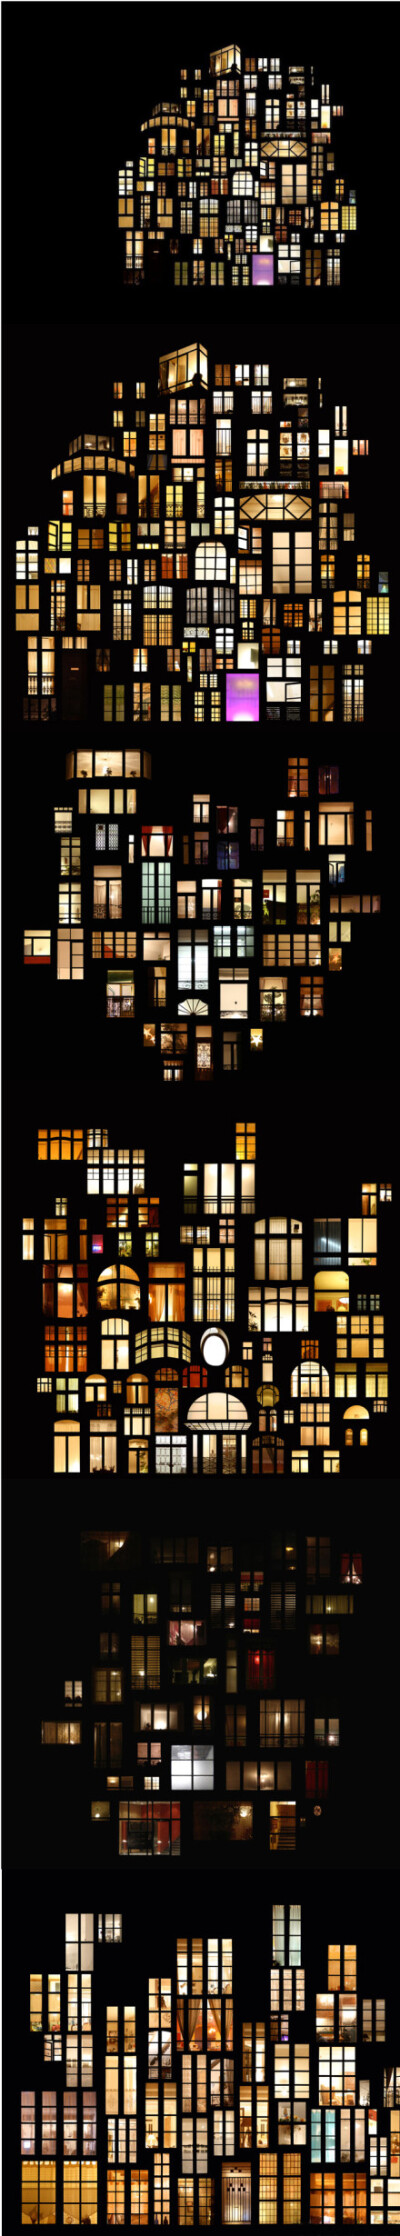 法国艺术家Anne-Laure Maison 把自己拍摄过的夜晚的窗户重组并拼贴，加入了自己的想像，赋予了这些或许相隔很远的窗户们一个新的分布结构，就如梦幻的城堡一样，让人对窗户里面灯光下的世界产生了无尽的遐想与向往。…